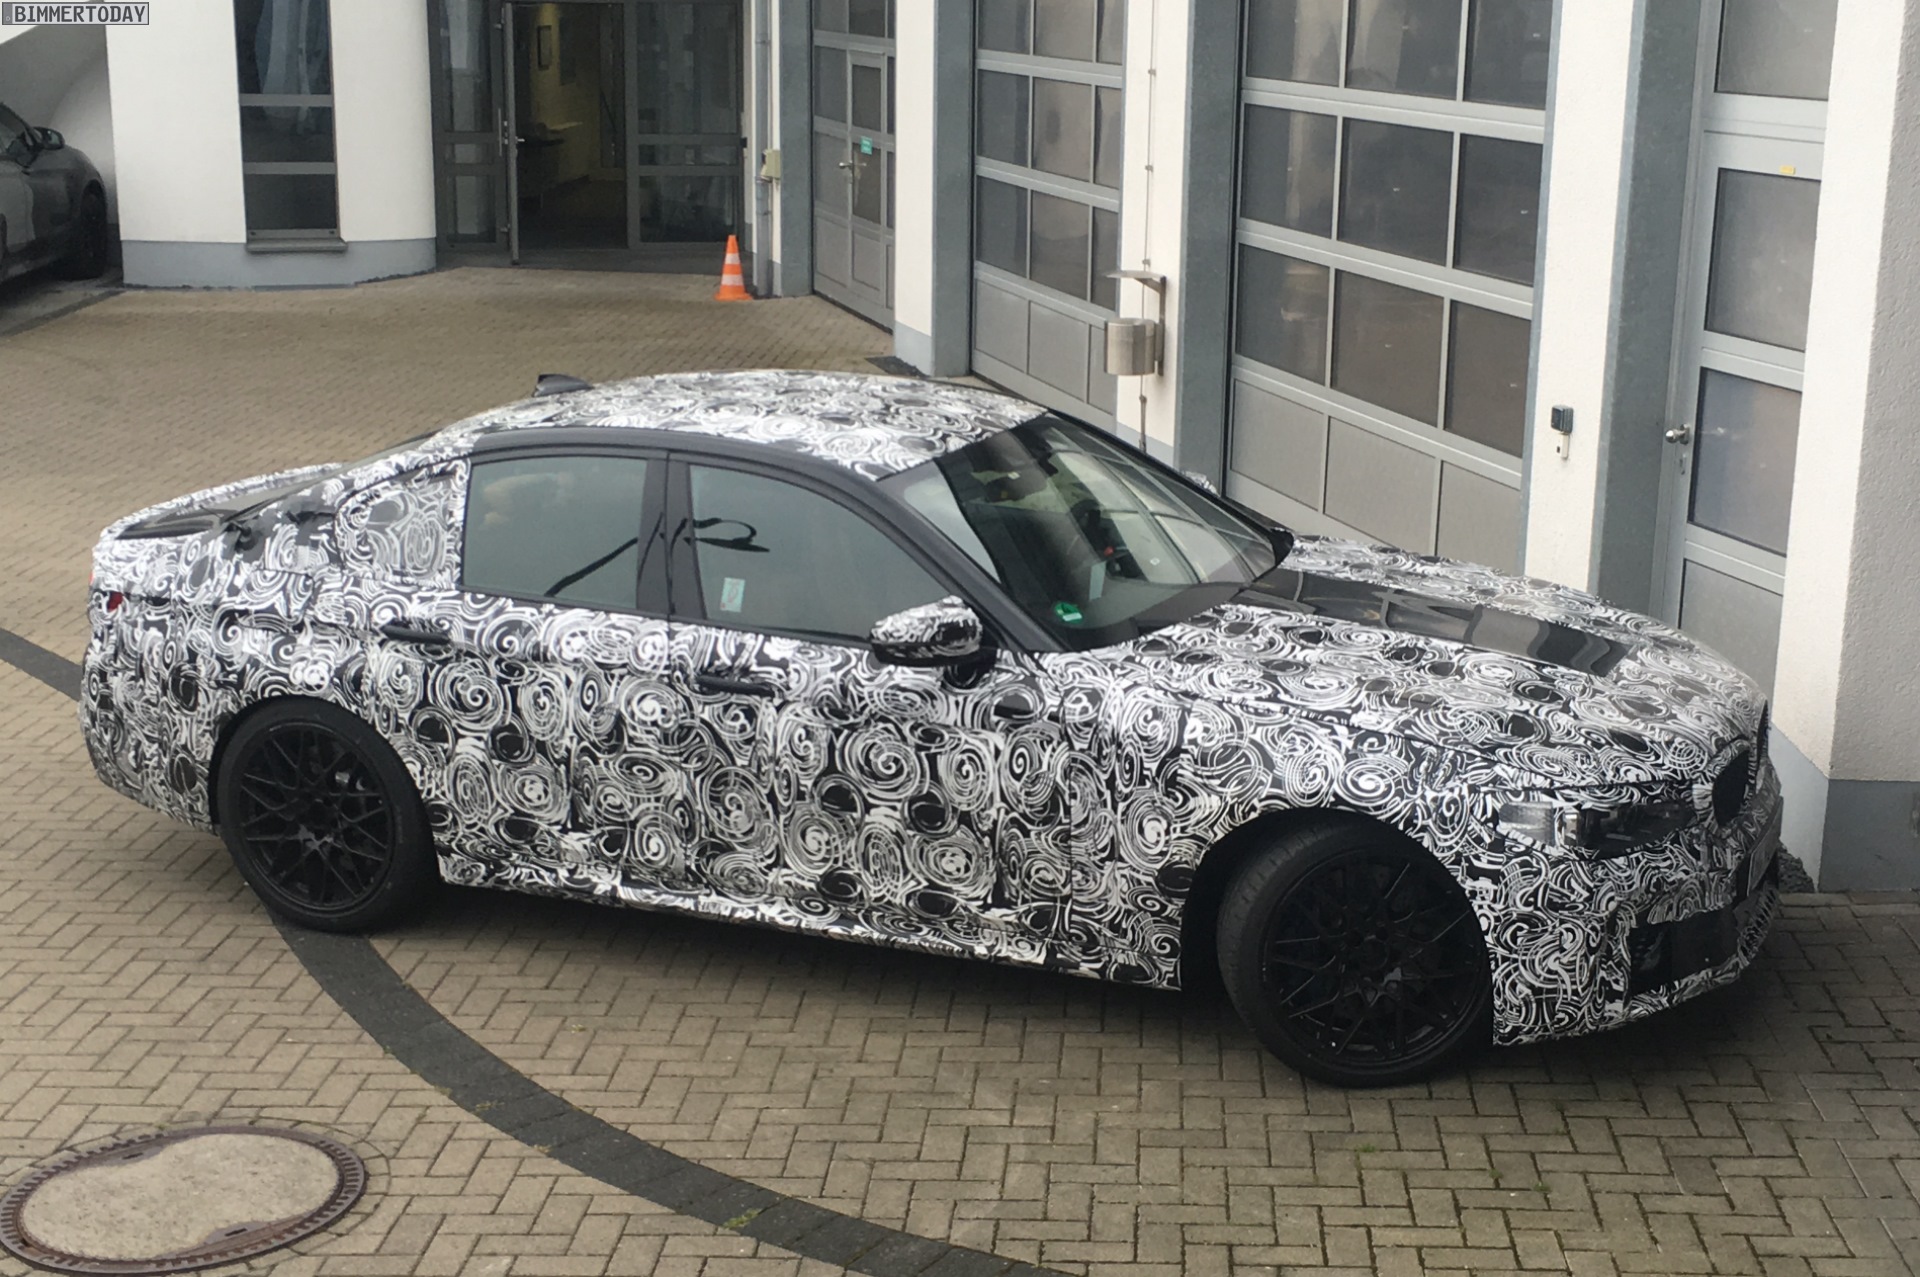 2018 BMW M5 